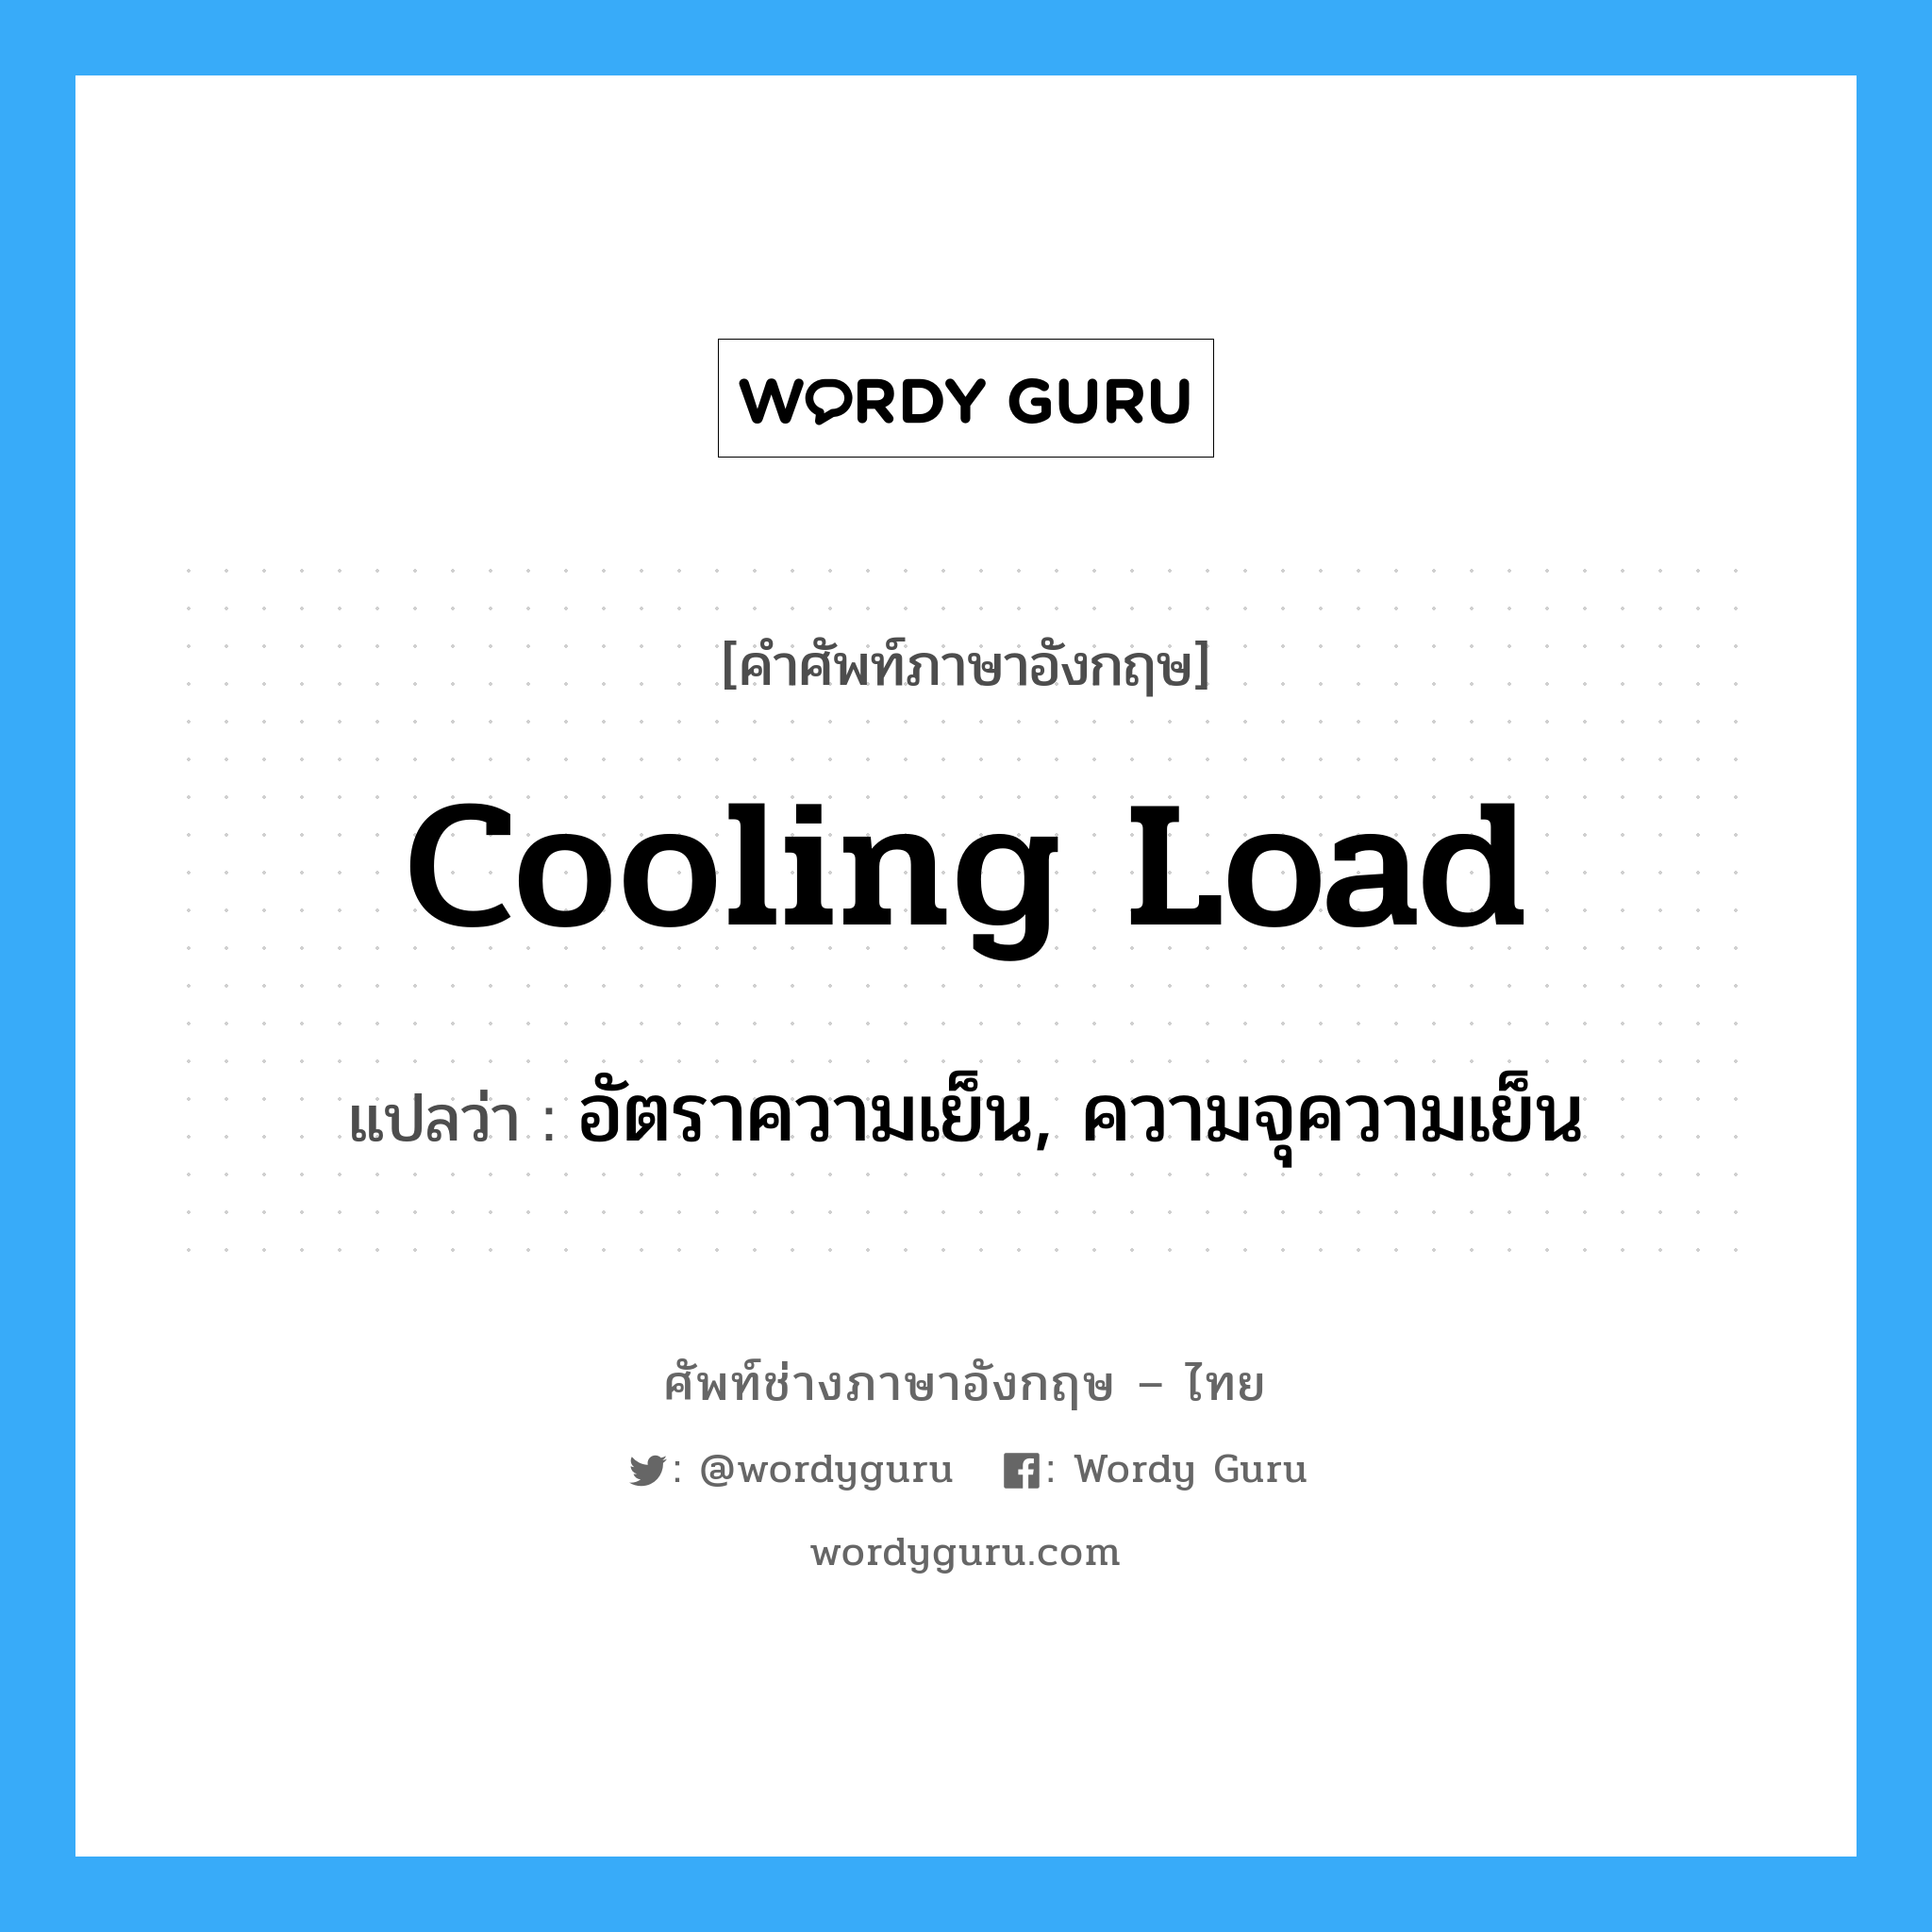 อัตราความเย็น, ความจุความเย็น ภาษาอังกฤษ?, คำศัพท์ช่างภาษาอังกฤษ - ไทย อัตราความเย็น, ความจุความเย็น คำศัพท์ภาษาอังกฤษ อัตราความเย็น, ความจุความเย็น แปลว่า cooling load